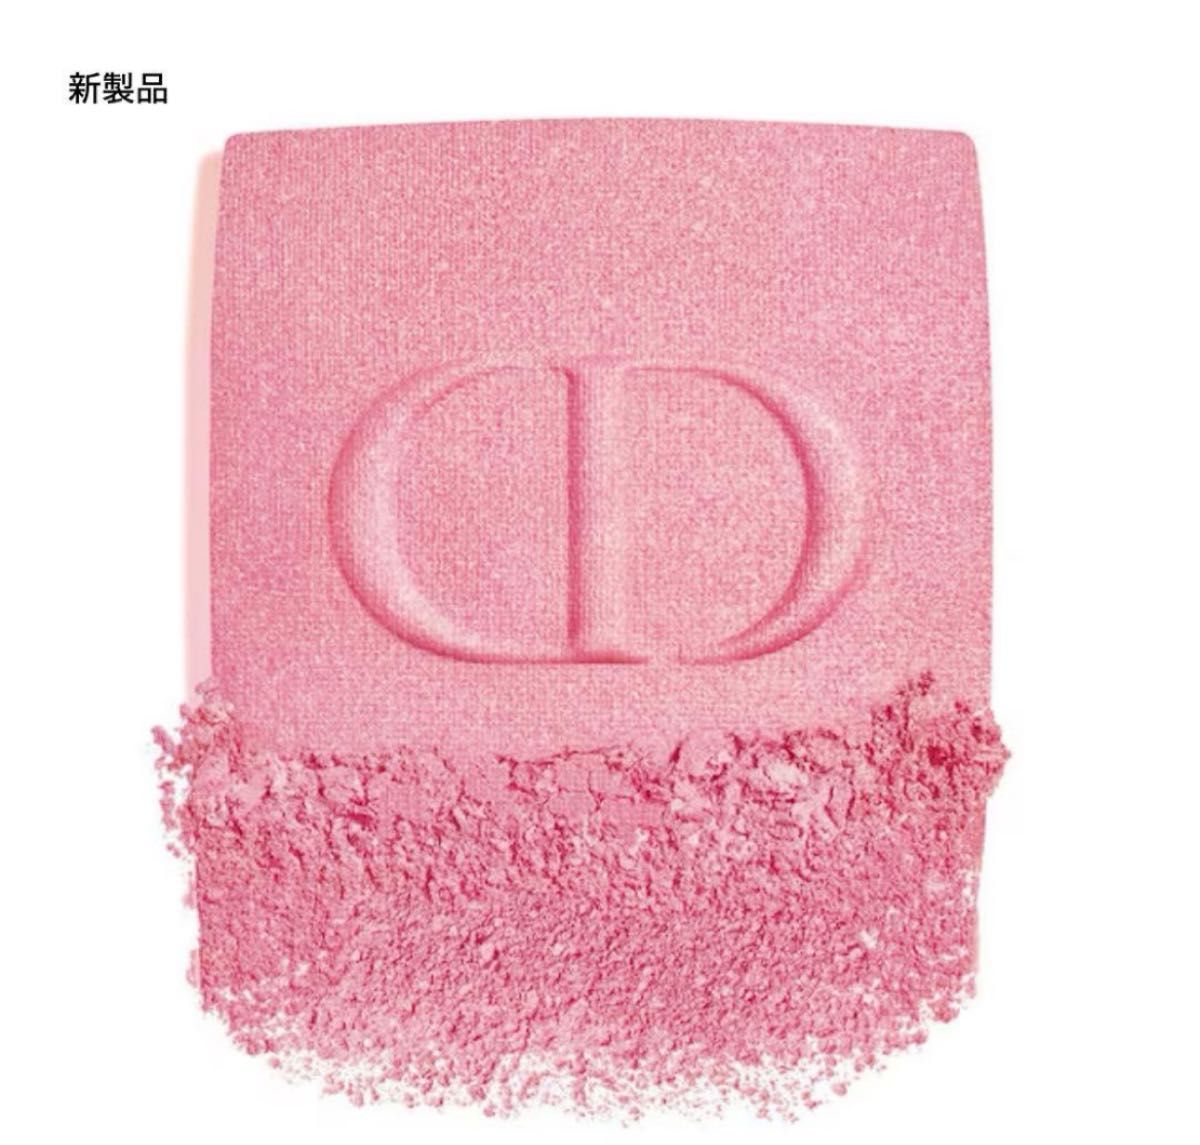 【人気完売品】Dior ディオールスキン ルージュ ブラッシュ212 チュチュ ホログラフィック